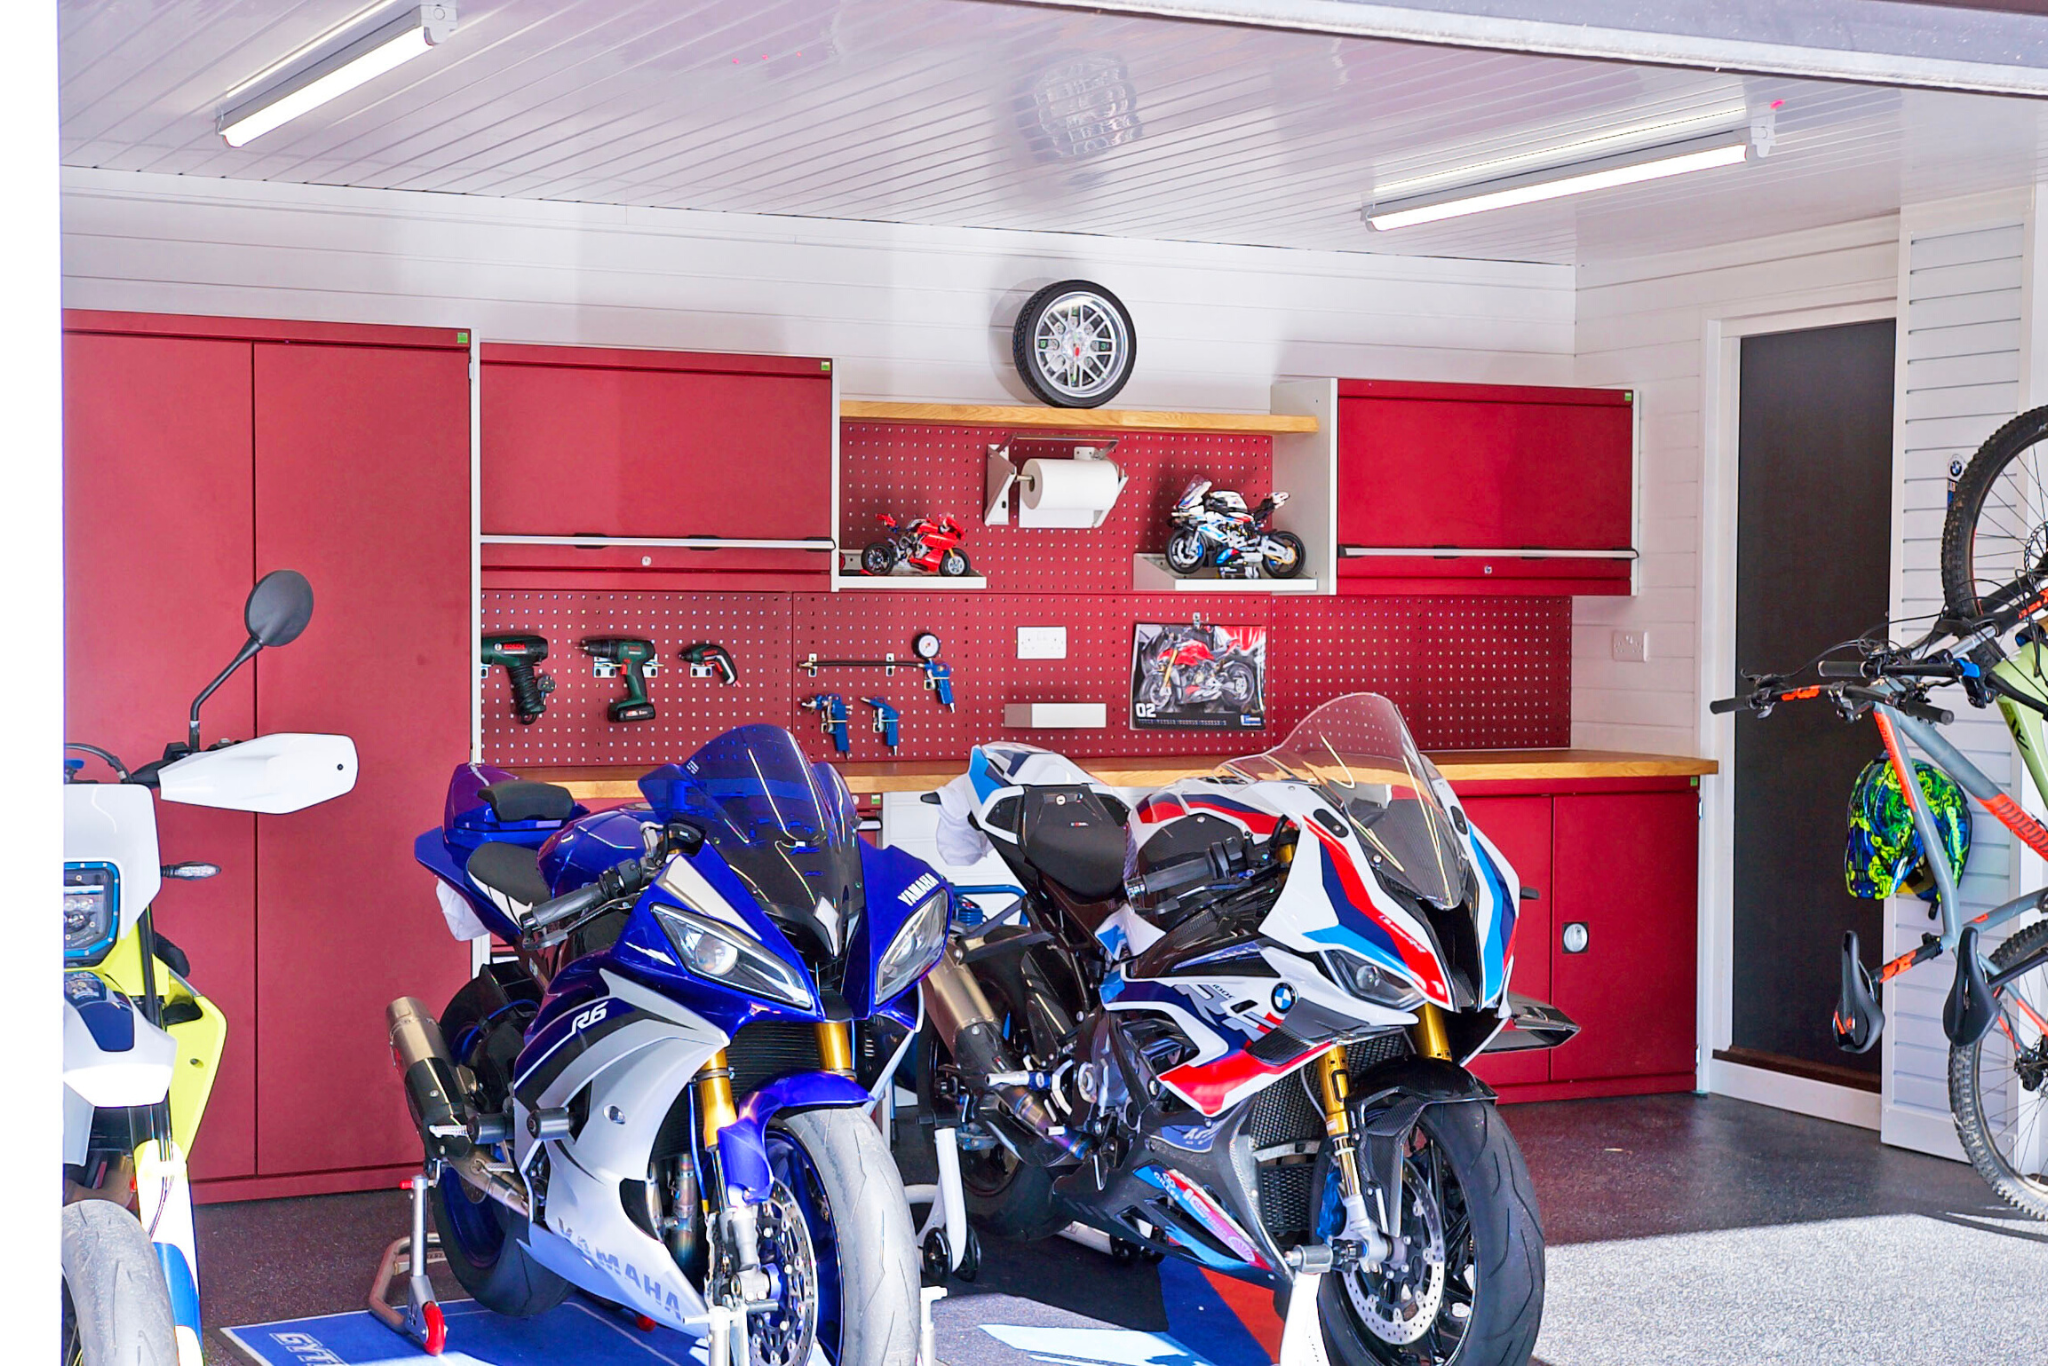 Motorcycle workshop dream garage space